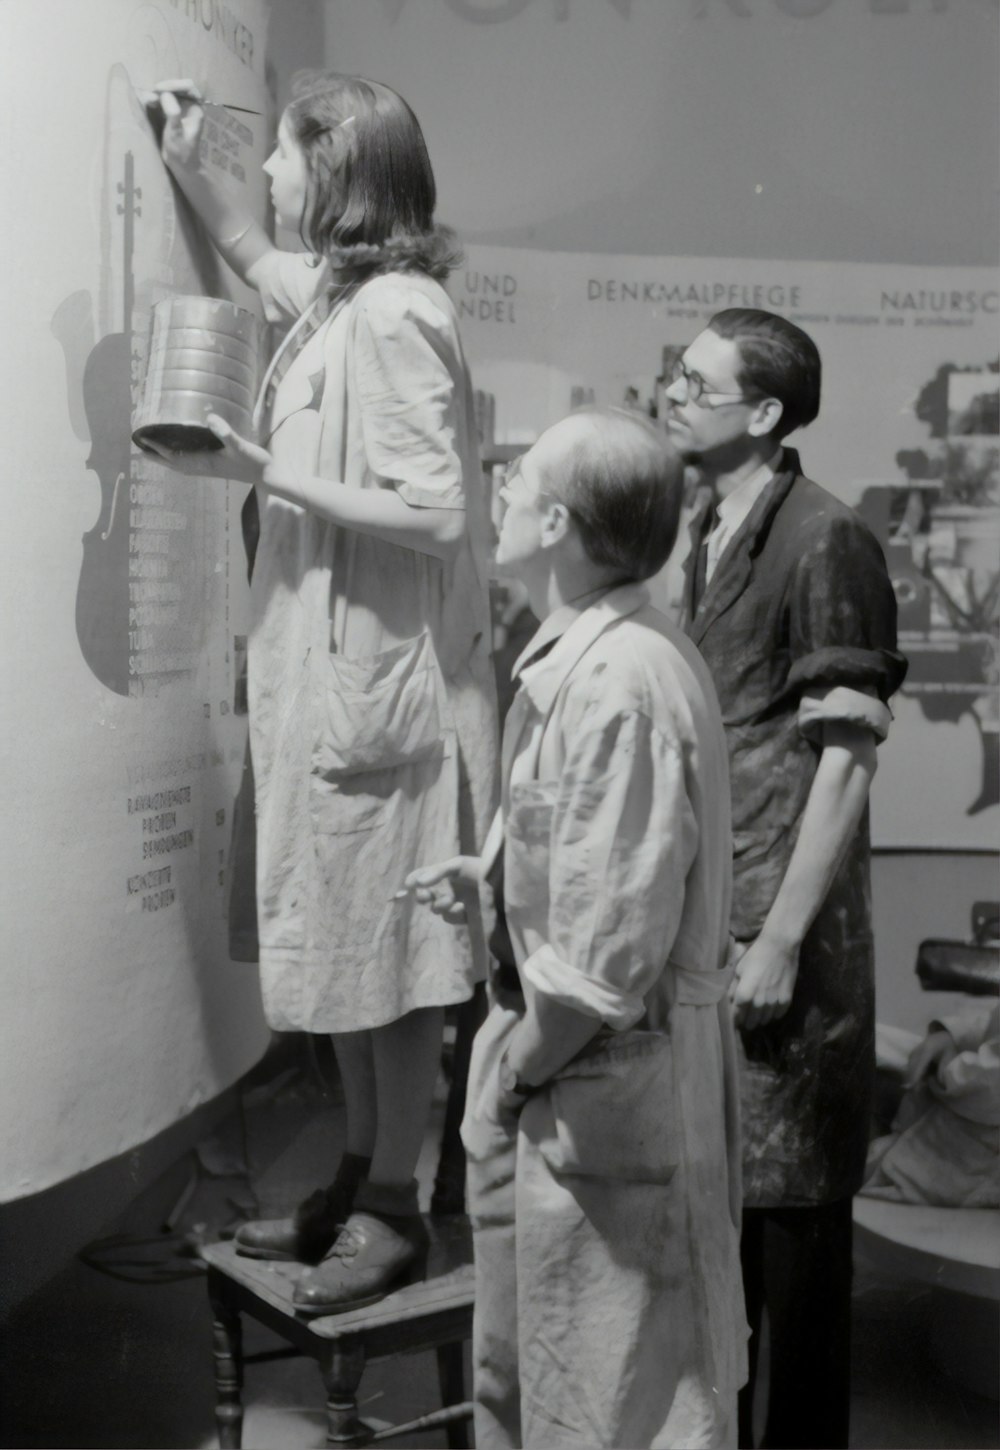 foto in scala di grigi di uomo e donna in piedi accanto al ragazzo